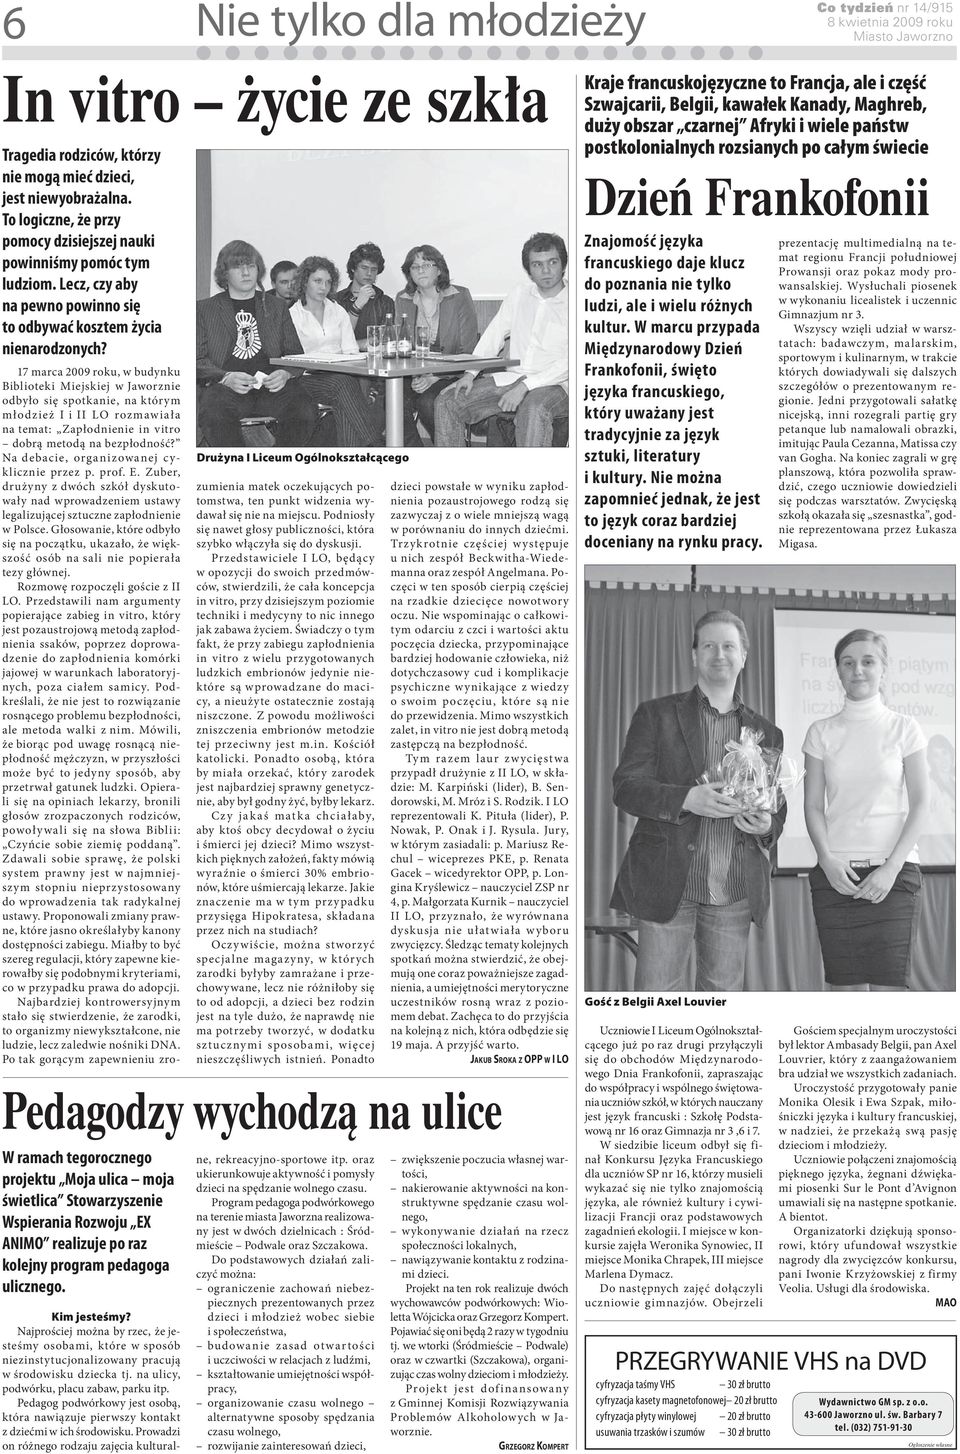 Drużyna I Liceum Ogólnokształcącego 17 marca 2009 roku, w budynku Biblioteki Miejskiej w Jaworznie odbyło się spotkanie, na którym młodzież I i II LO rozmawiała na temat: Zapłodnienie in vitro dobrą